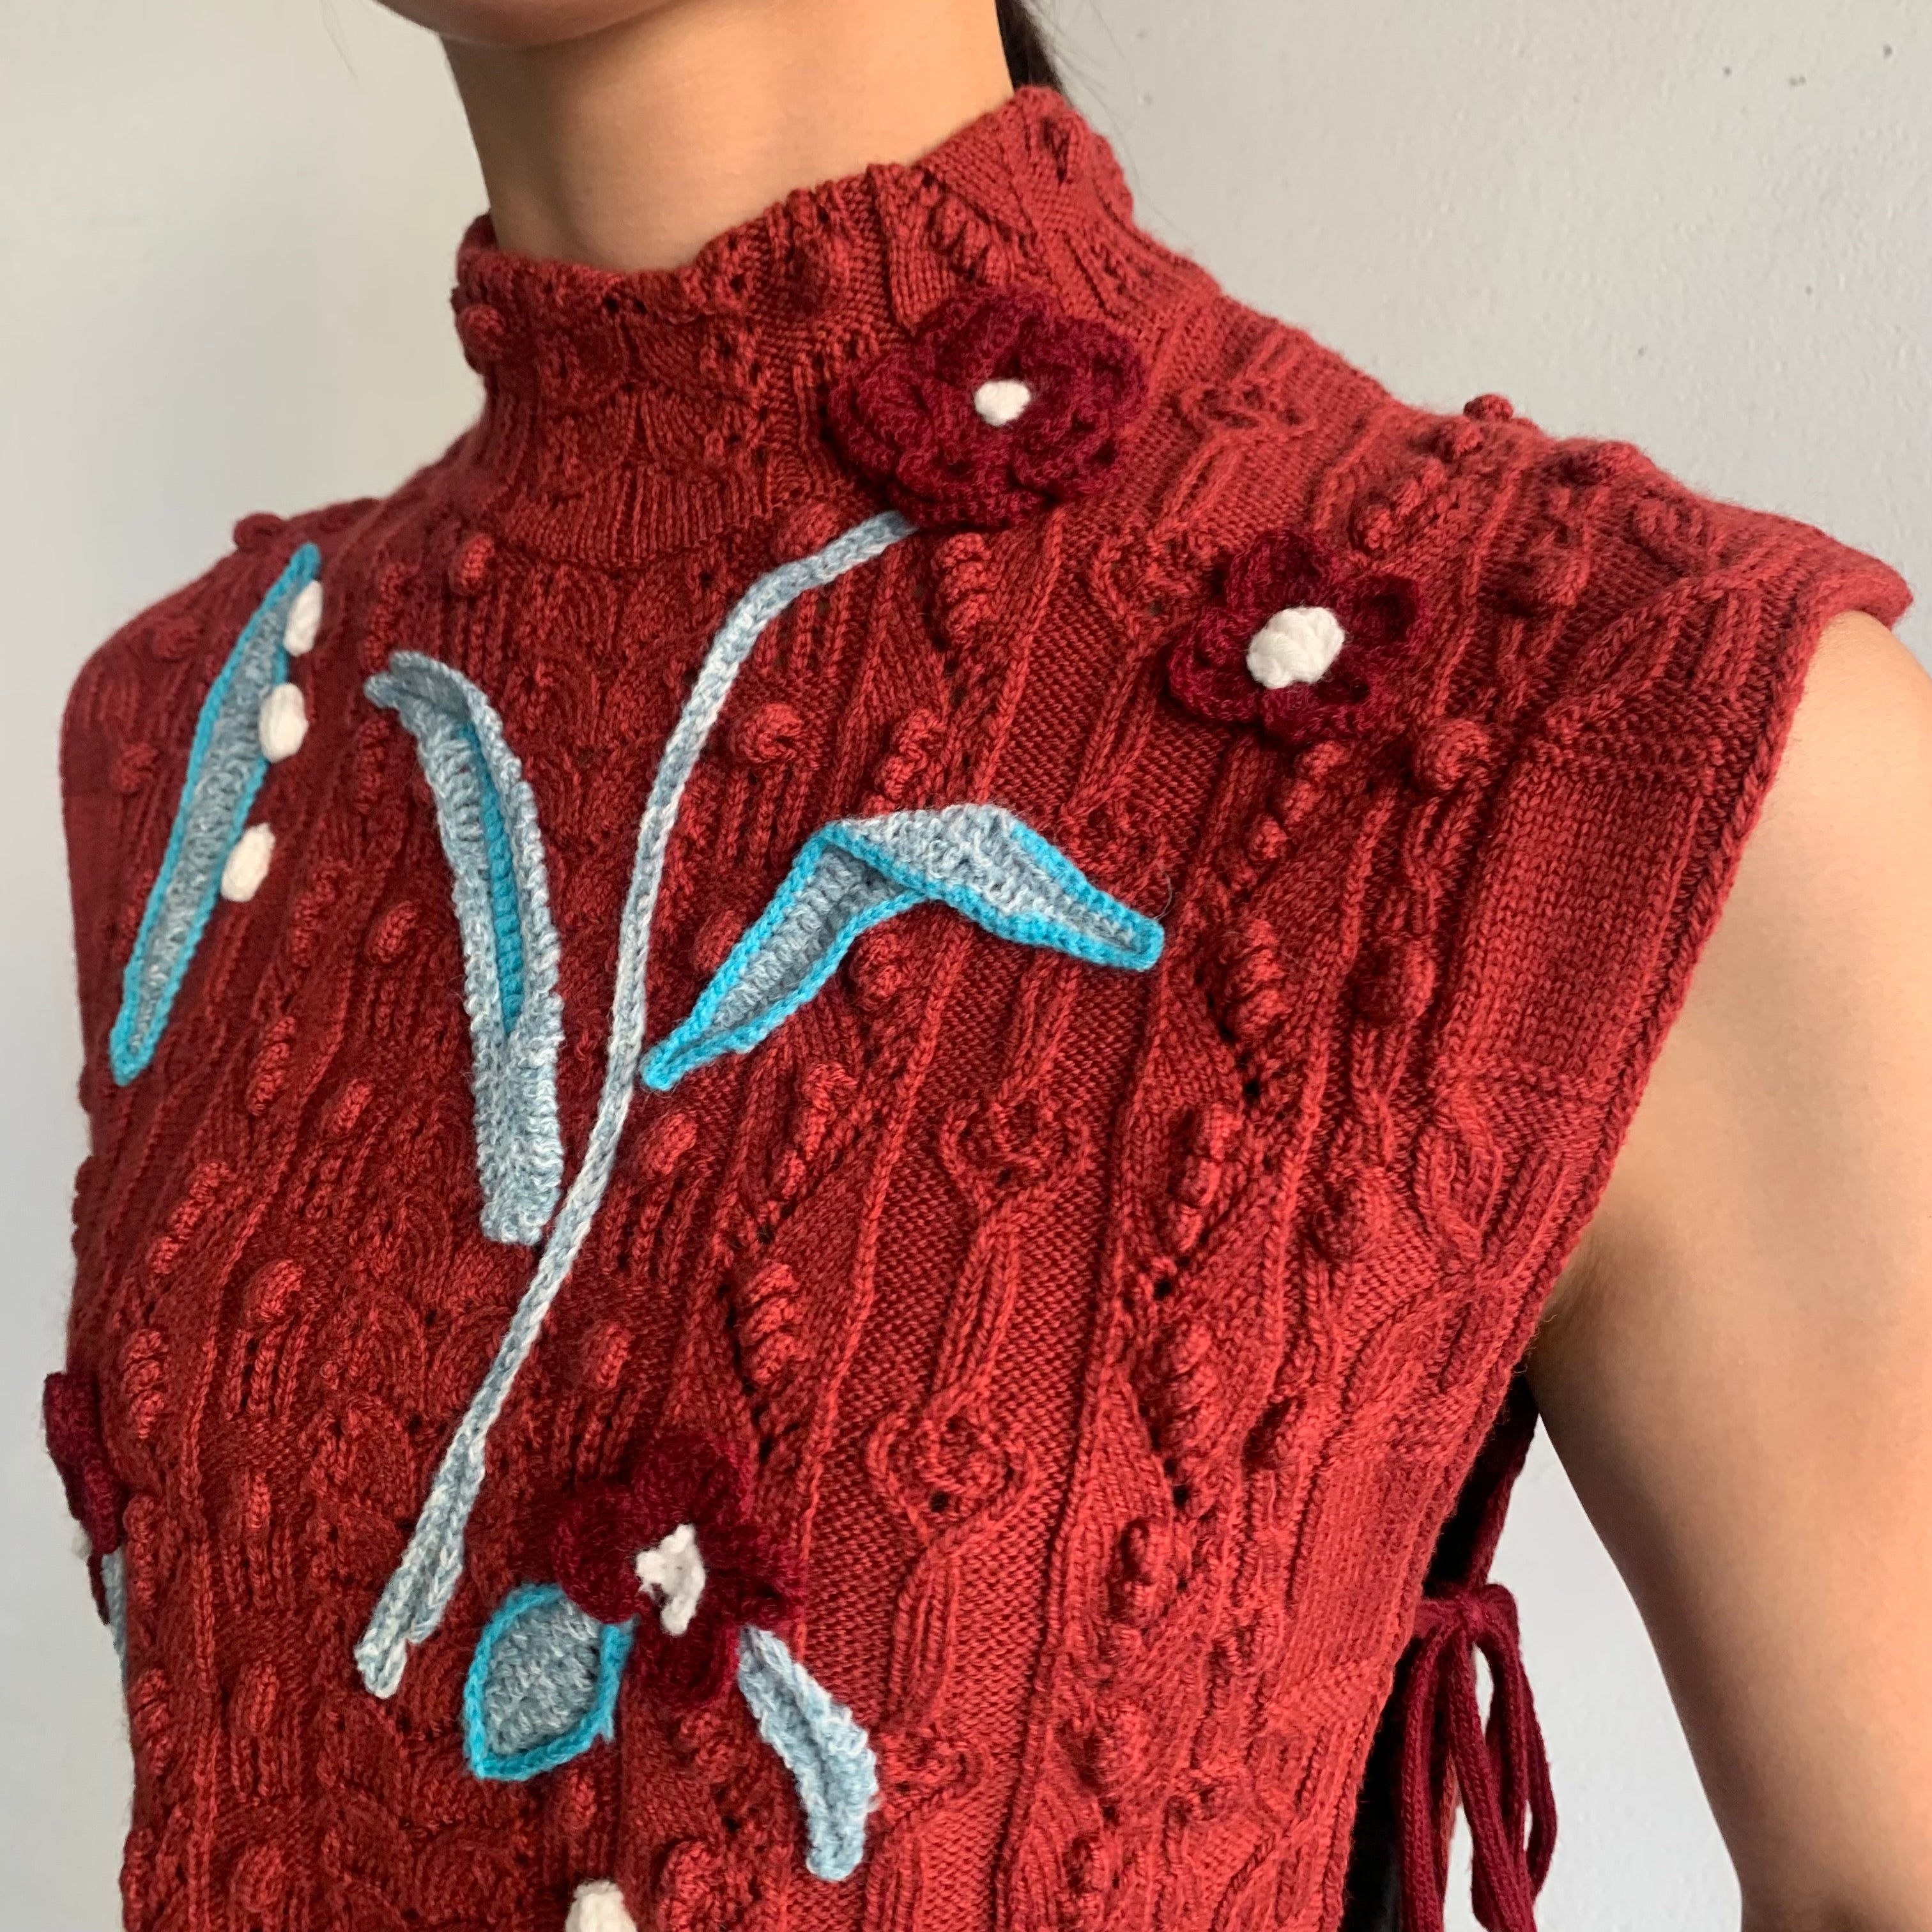 10,120円Mame Floral motif hand-knitted vest